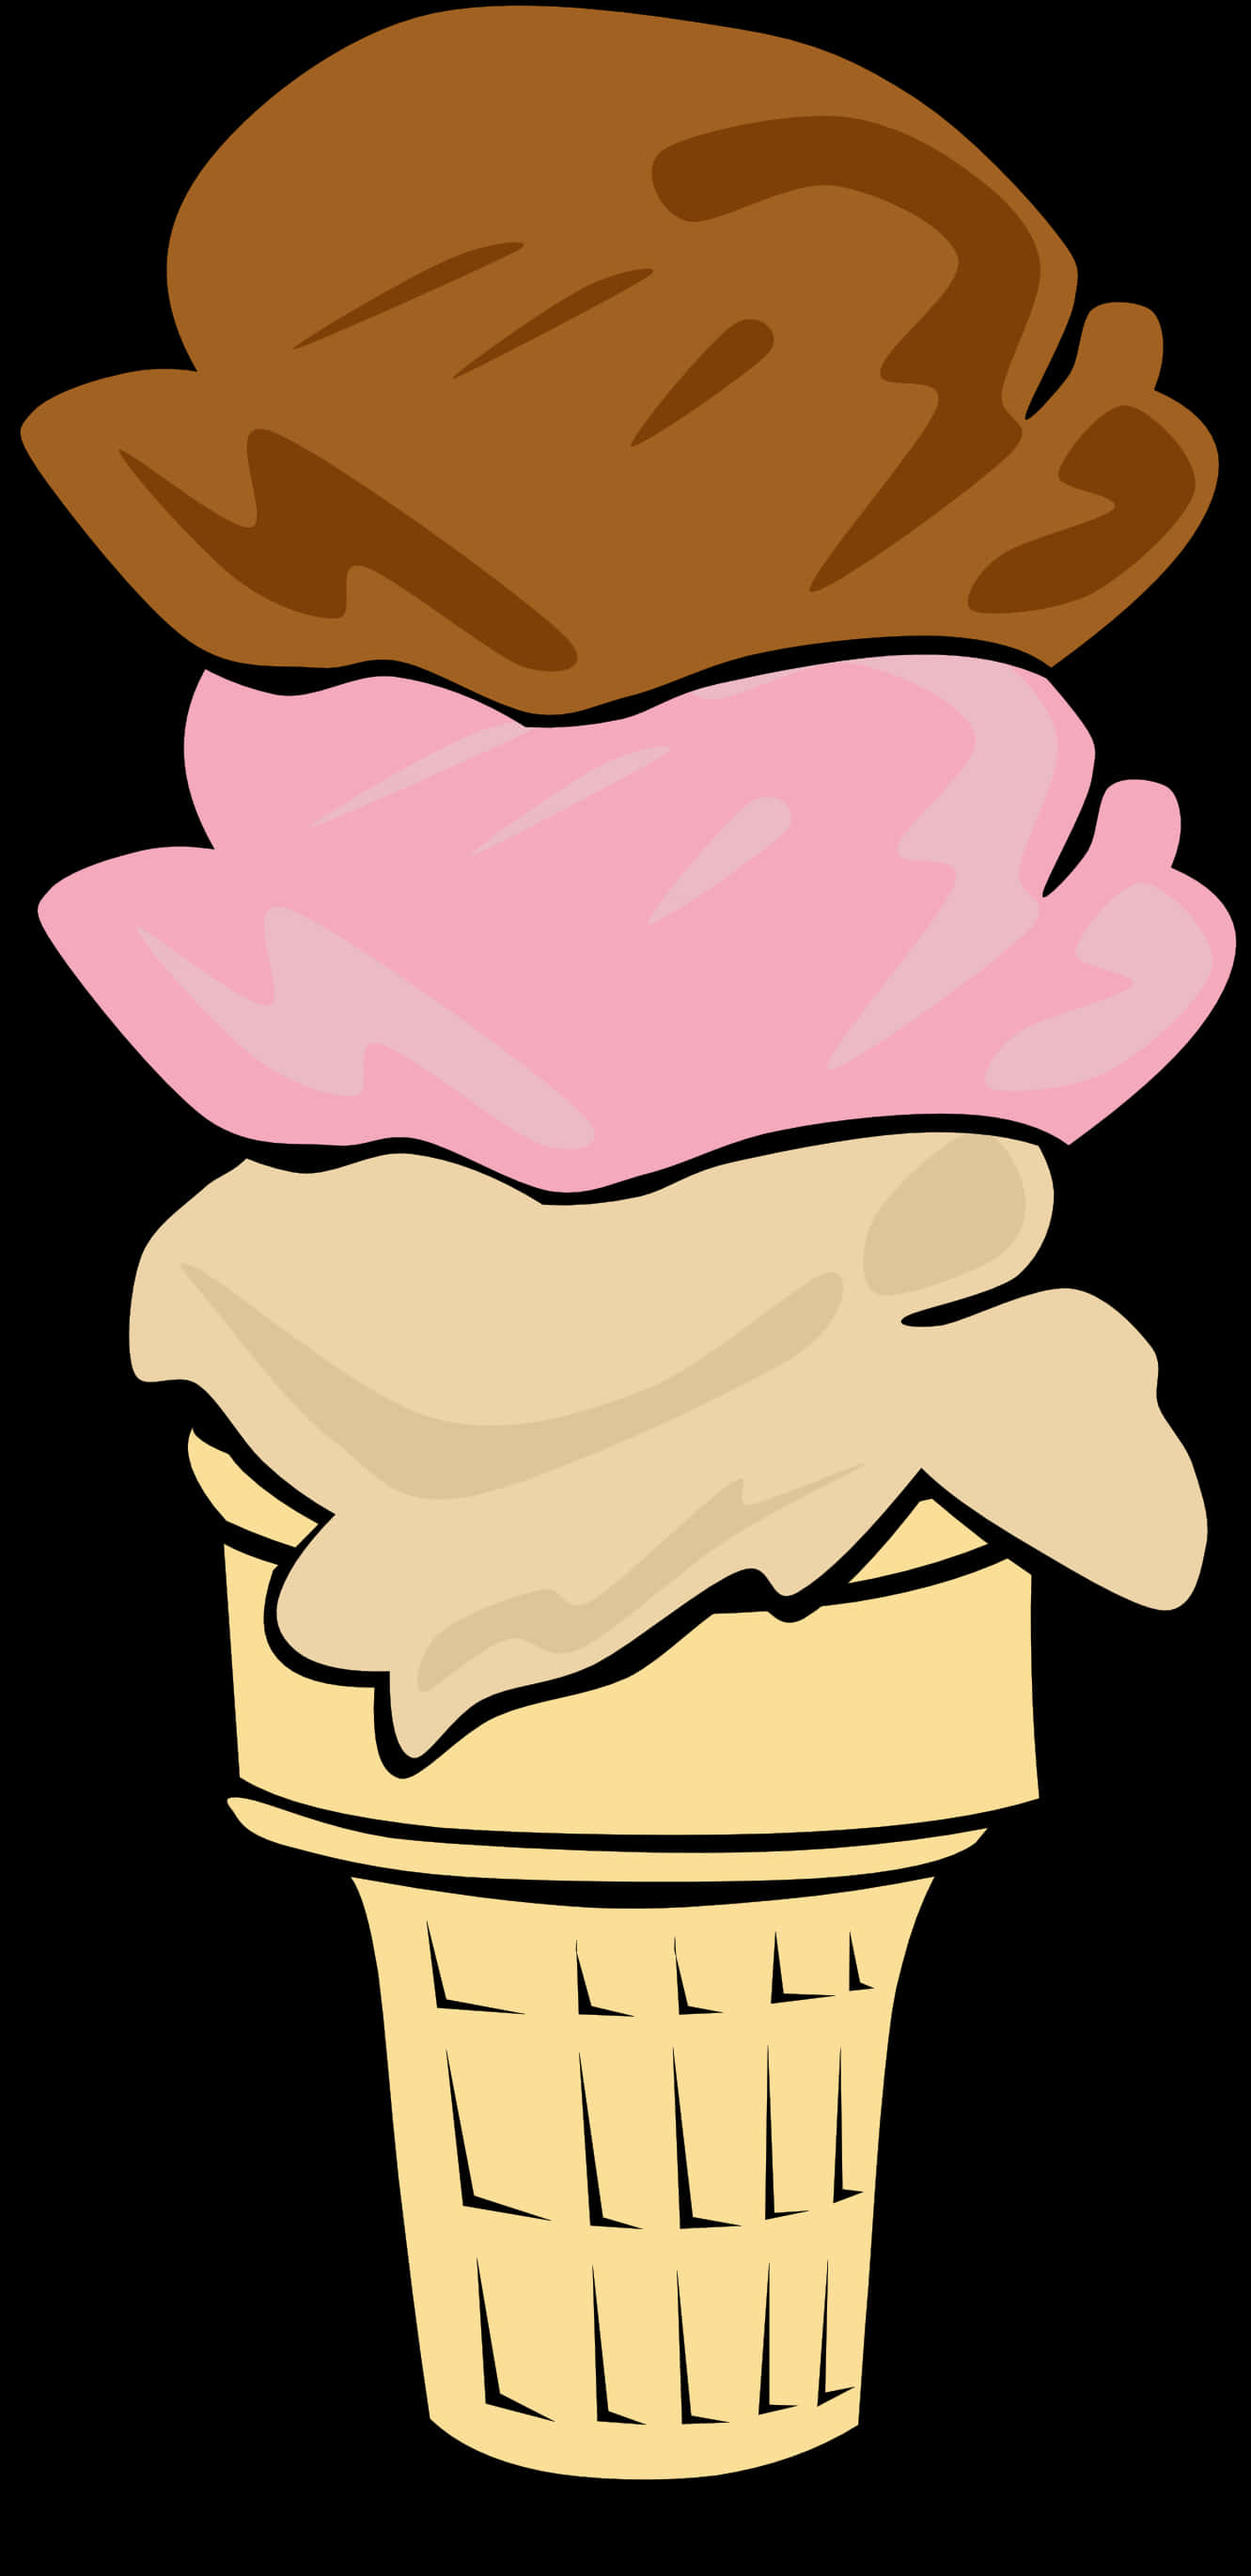 Triple Scoop Ice Cream Cone Illustration